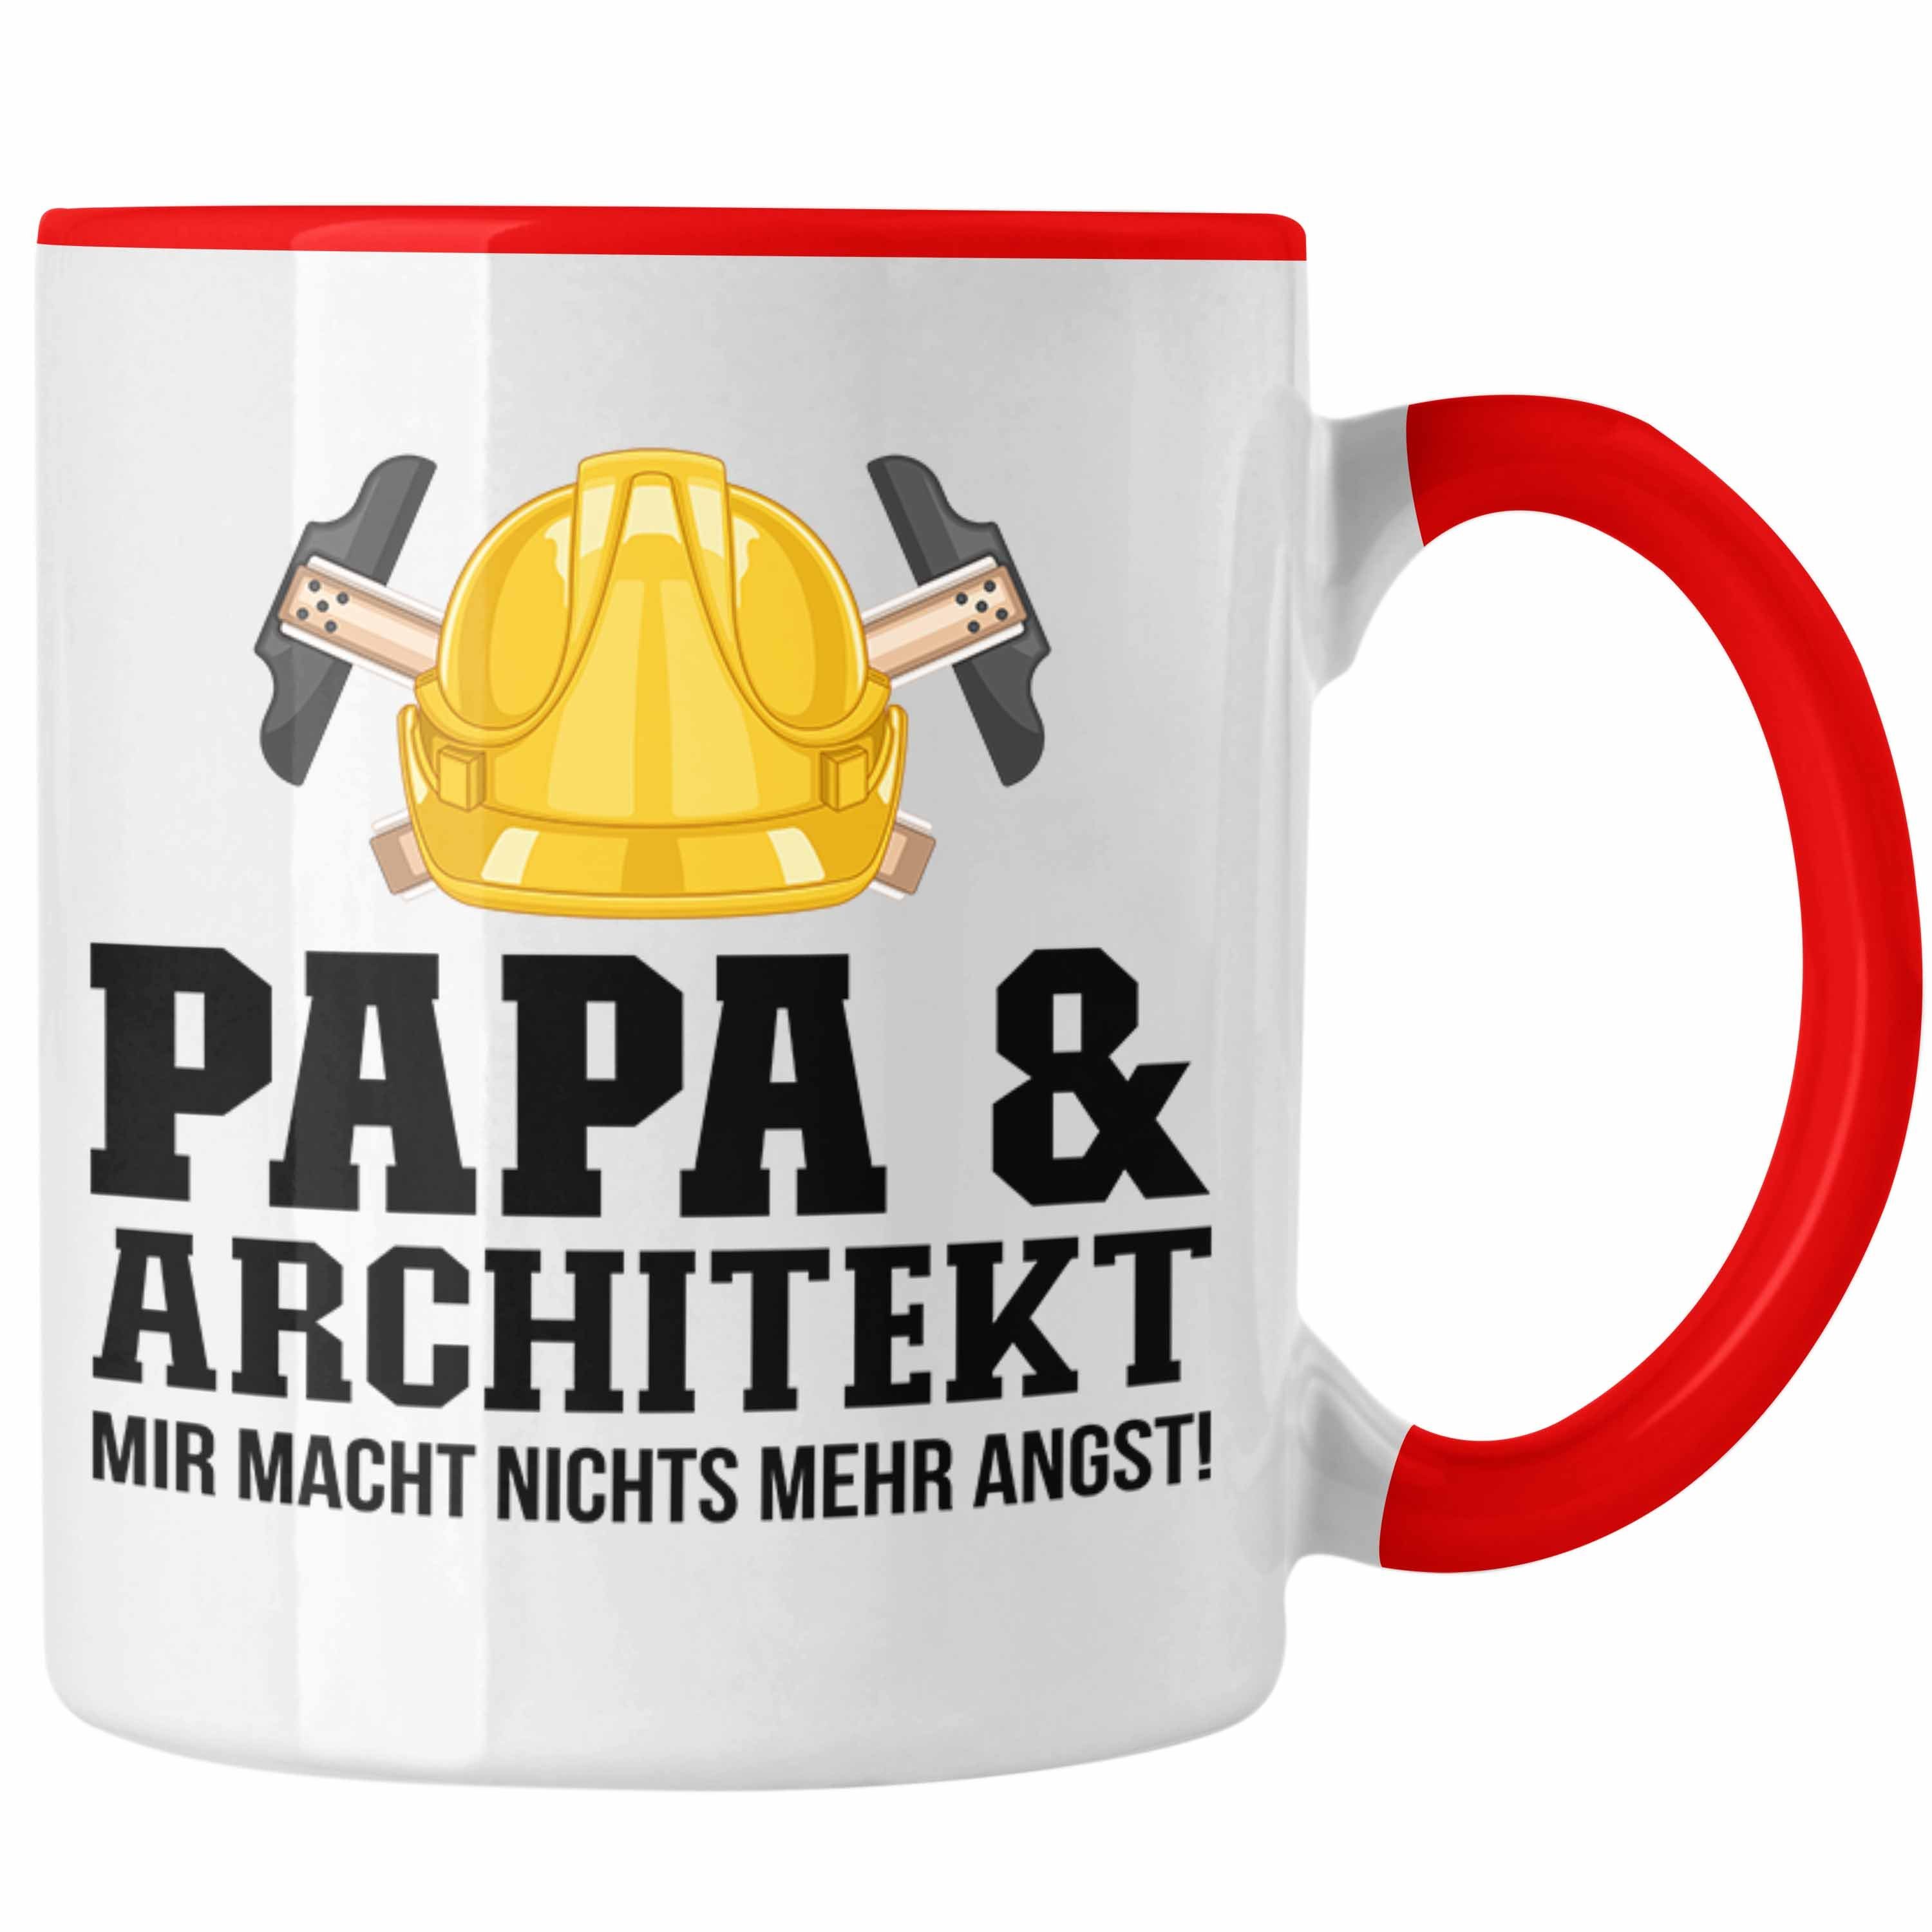 Trendation Tasse Trendation - Papa Architekt für Vater Tasse Rot und Architekt Geschenkidee